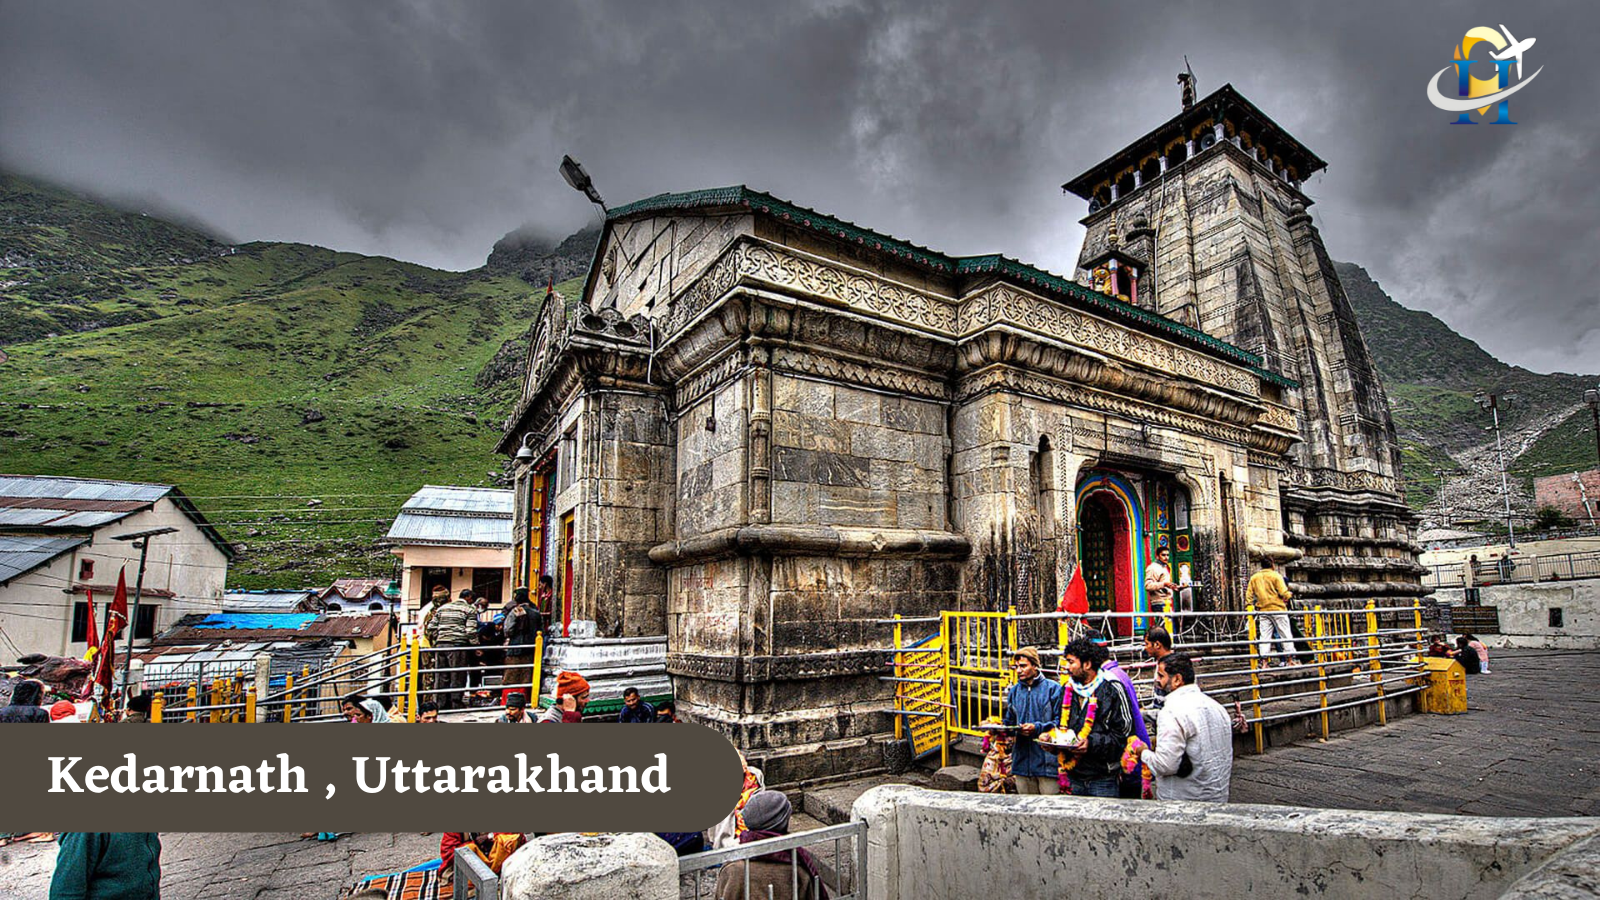 Shri Kedarnath Dham, Uttarakhand